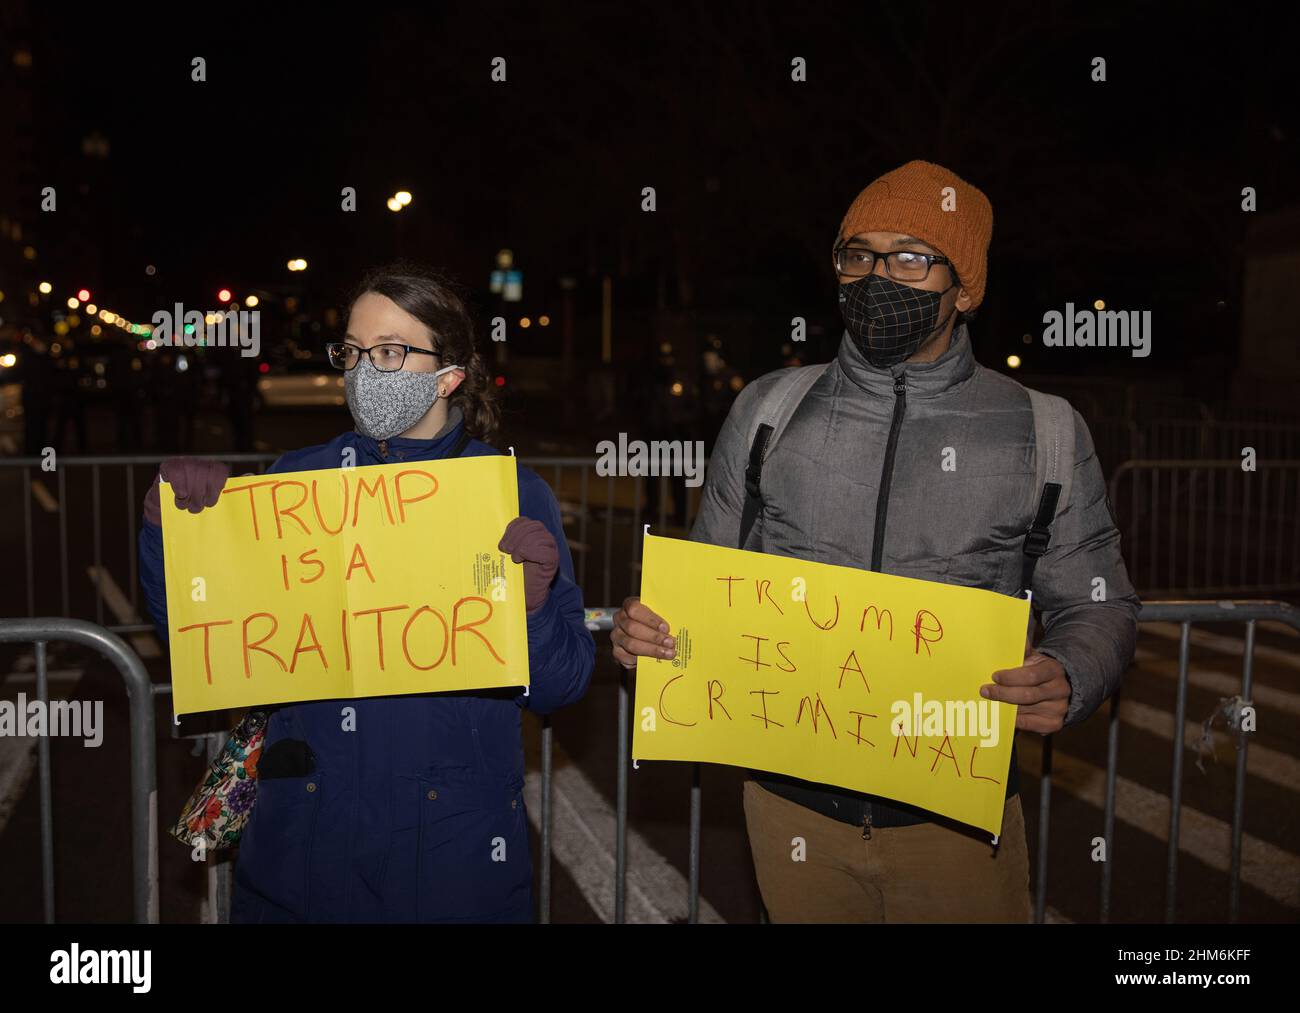 NEW YORK, New York – le 6 janvier 2021 : des manifestants anti-Trump sont vus à Manhattan à la suite des émeutes au Capitole des États-Unis à Washington Banque D'Images